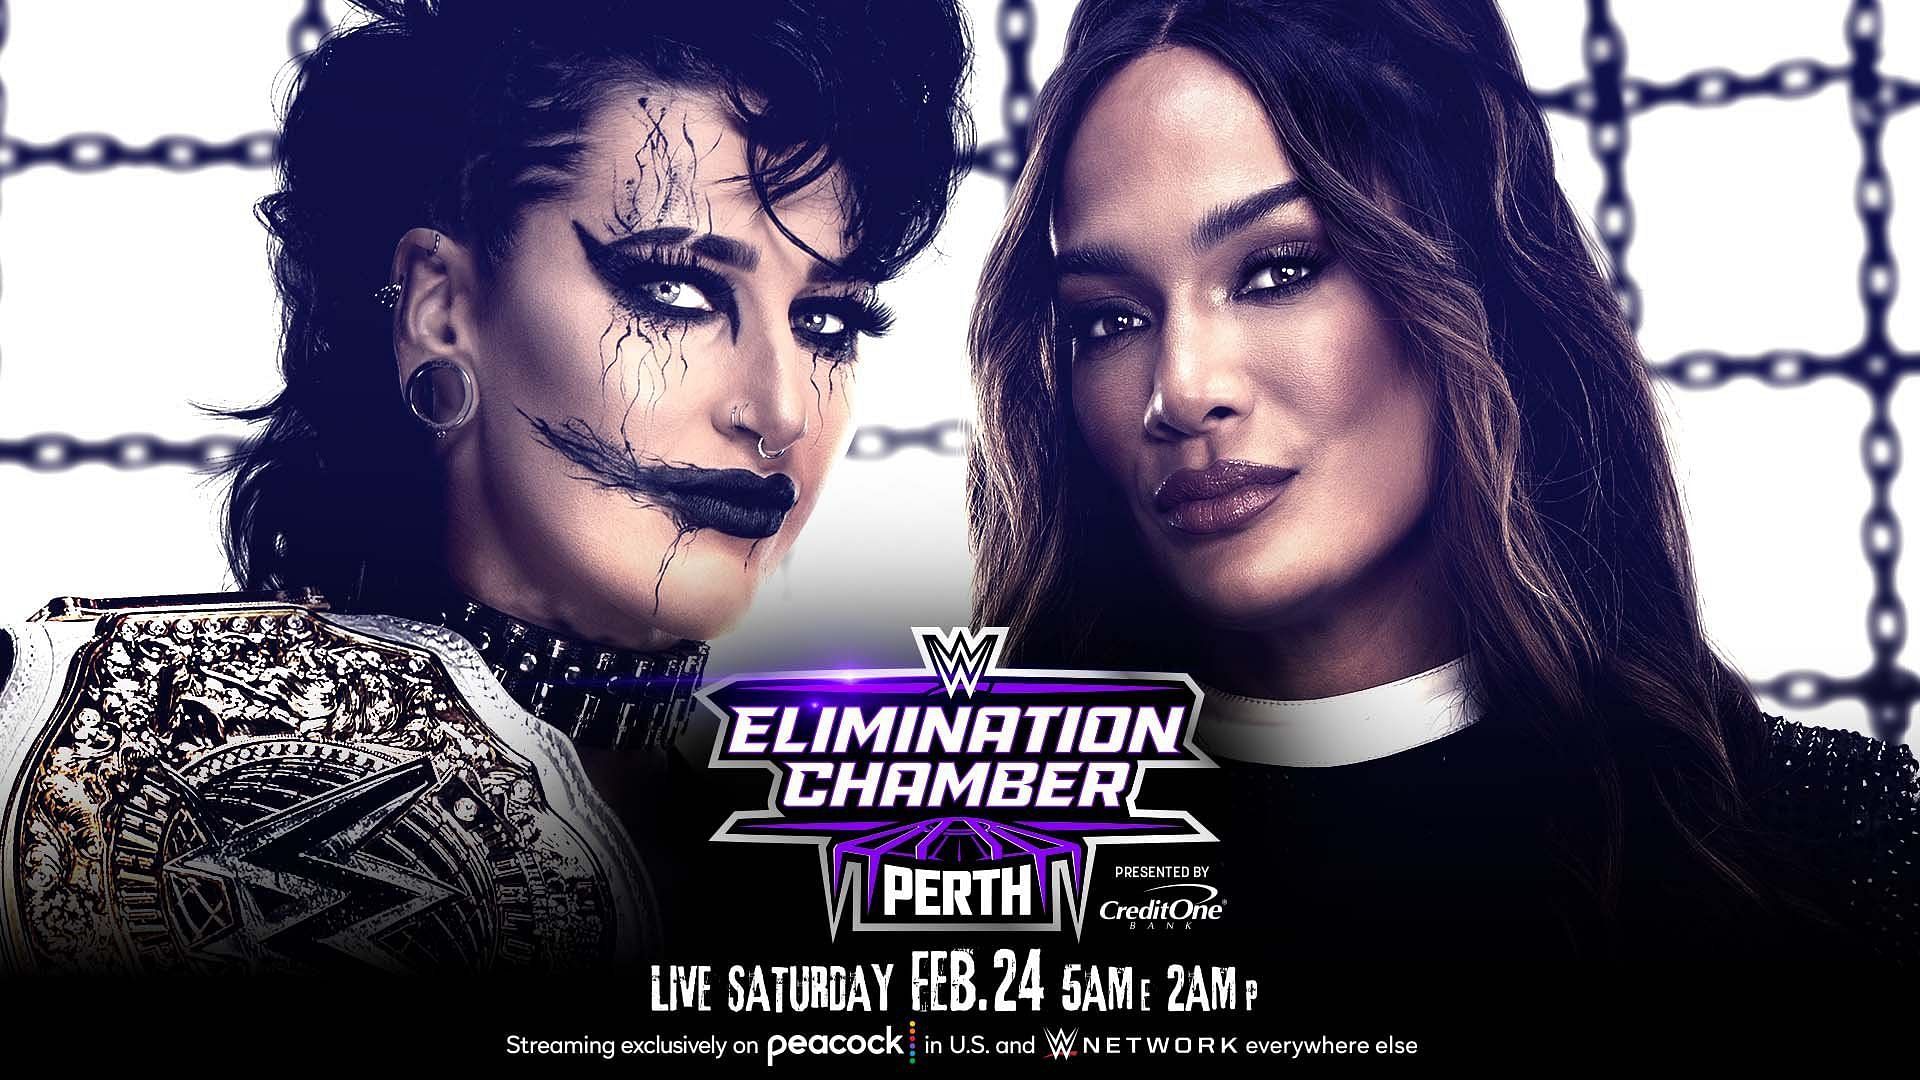 Rhea Ripley will battle Nia Jax at WWE Elimination Chamber Perth